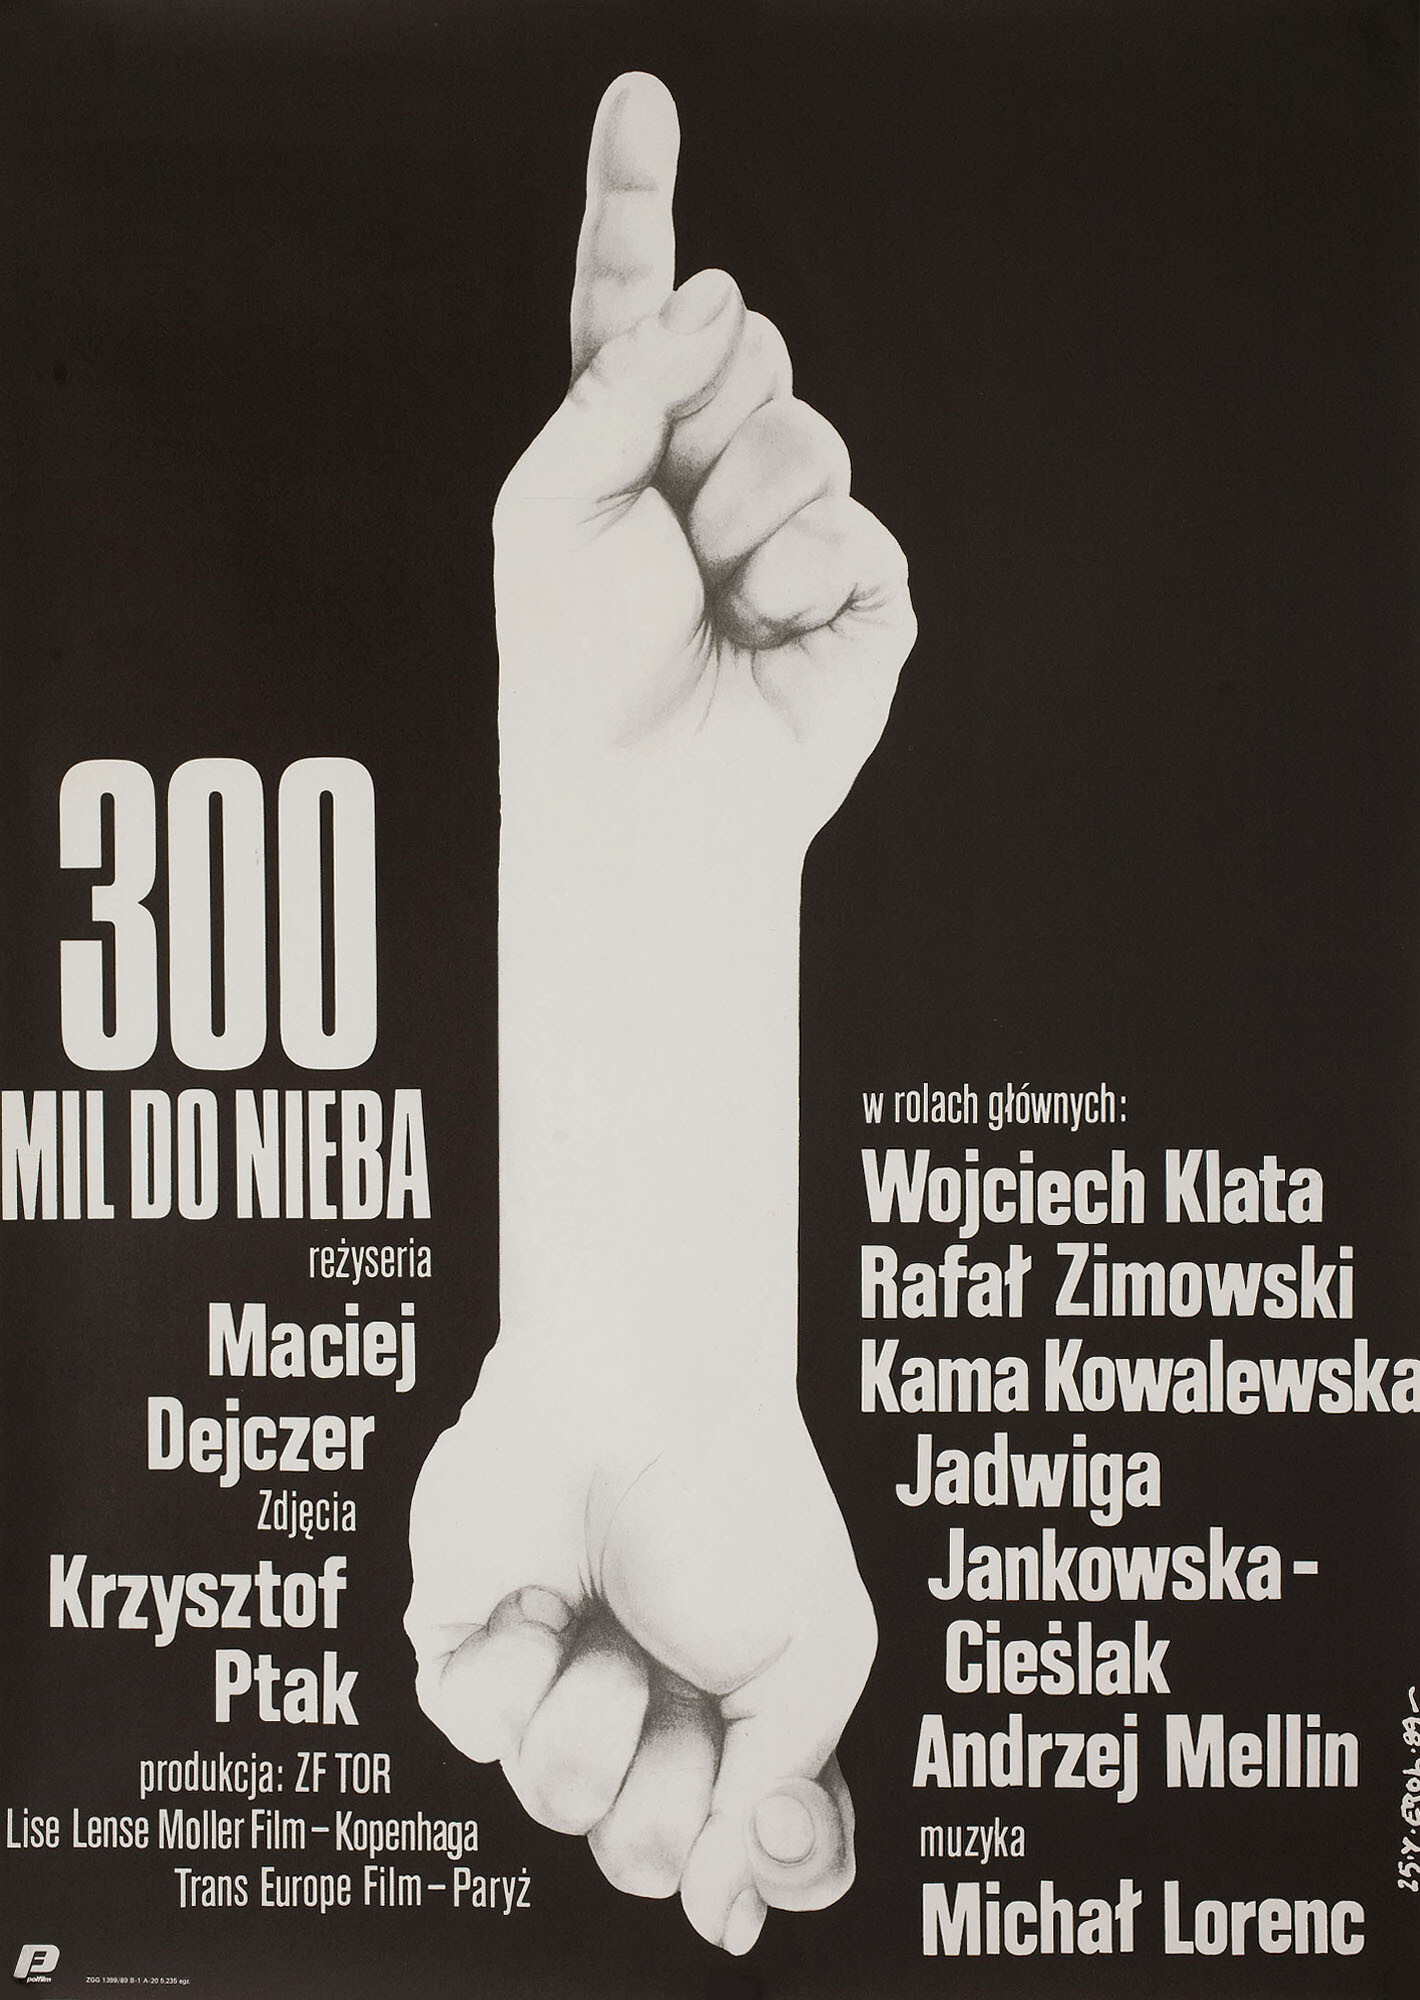 
300 миль до неба (300 Miles to Heaven, 1989), режиссёр Мацей Дейчер, польский плакат к фильму, 1989 год, автор Якуб Эрол